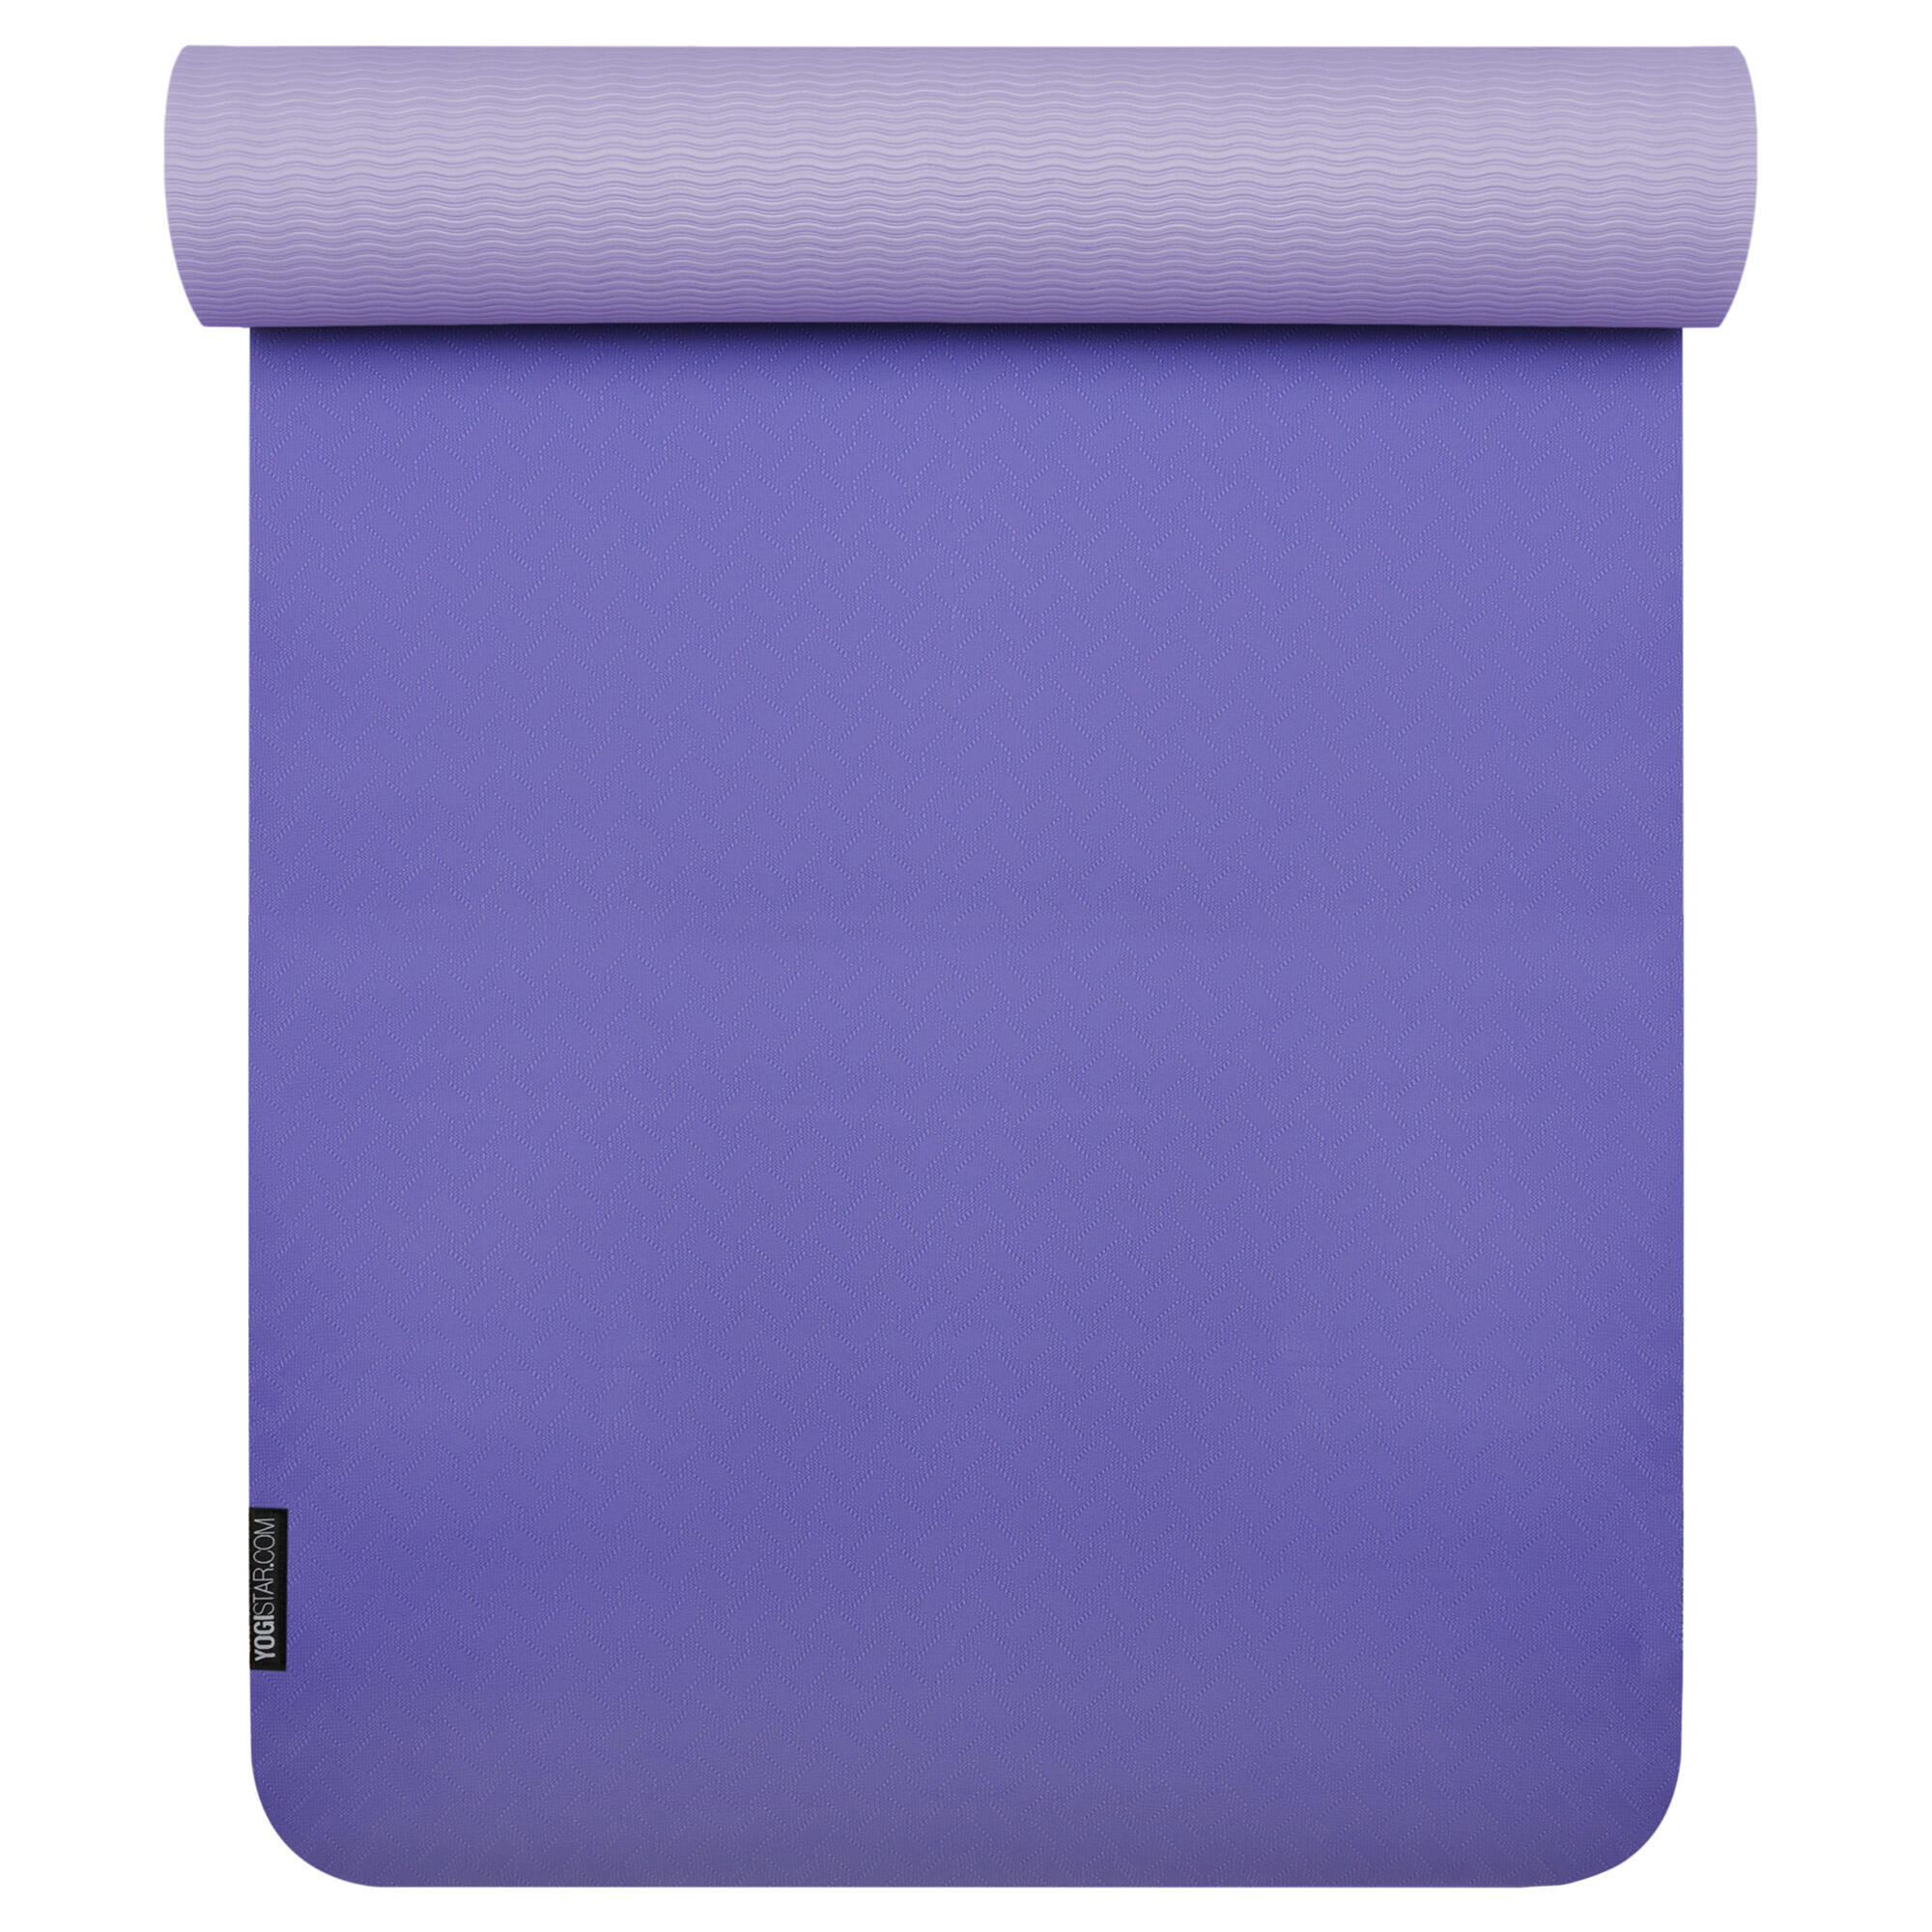 Коврик для йоги YOGISTAR Pro, фиолетовый